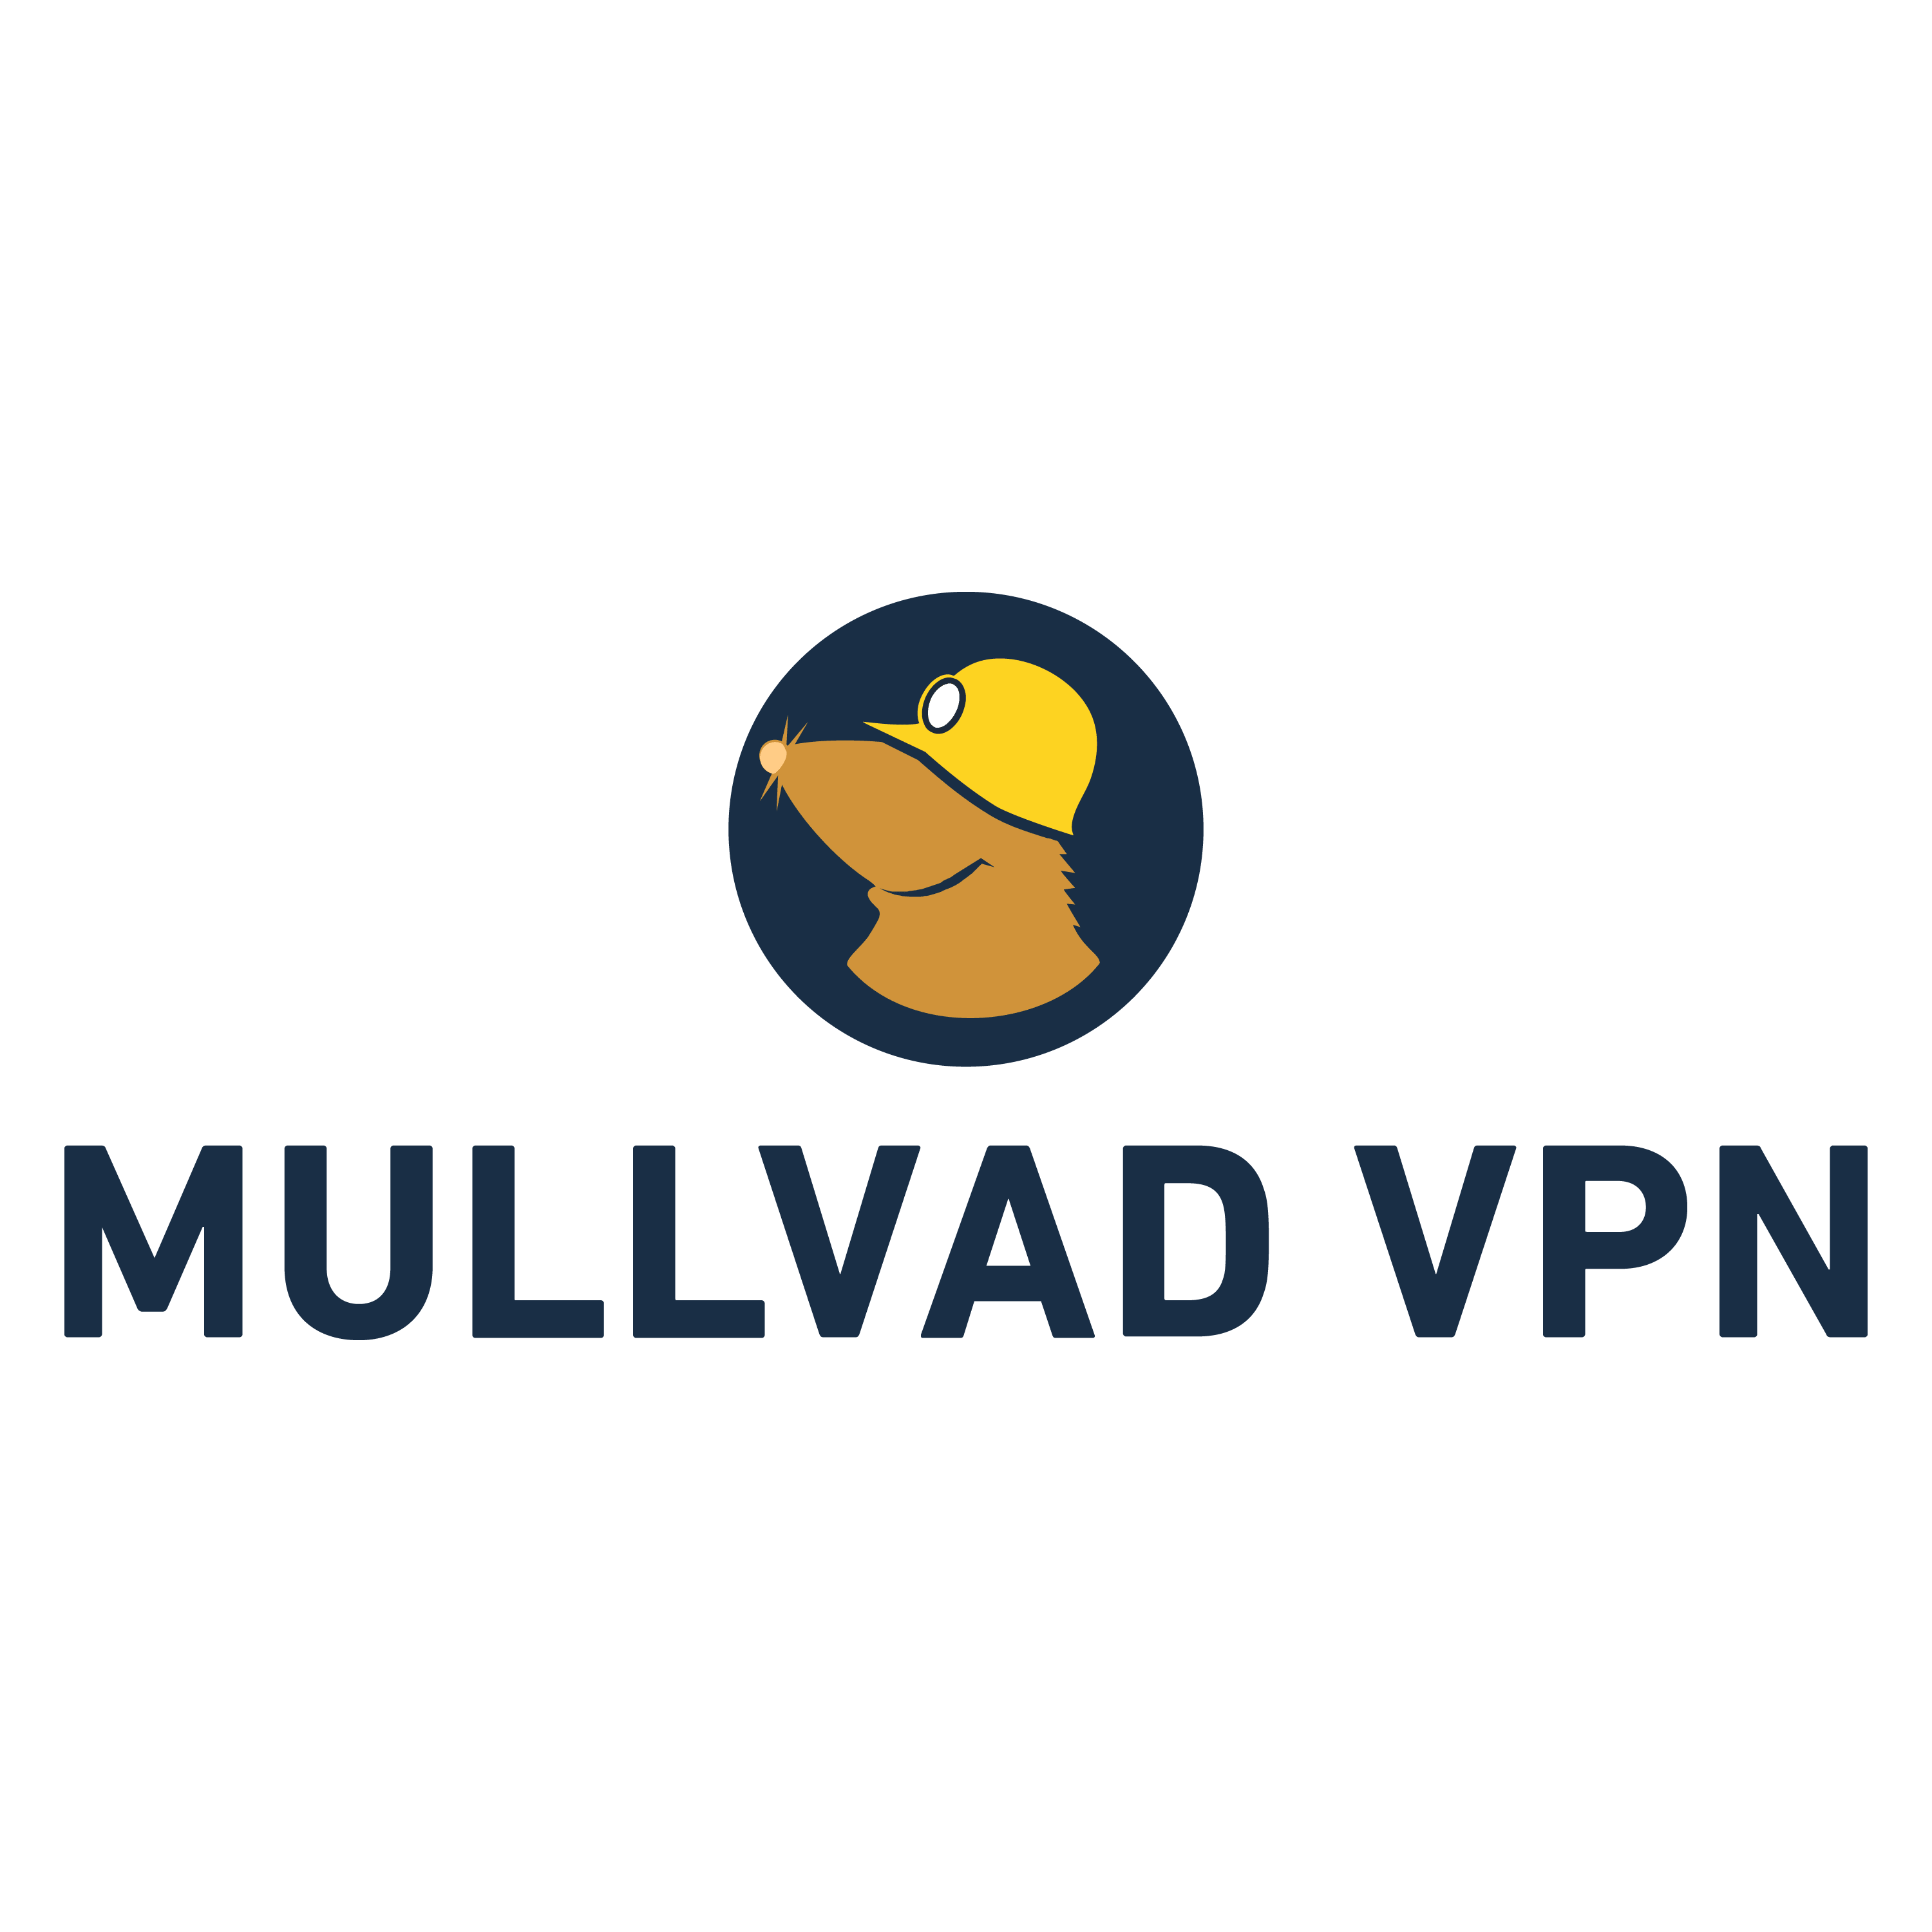 Mullvad VPN:s logotyp.